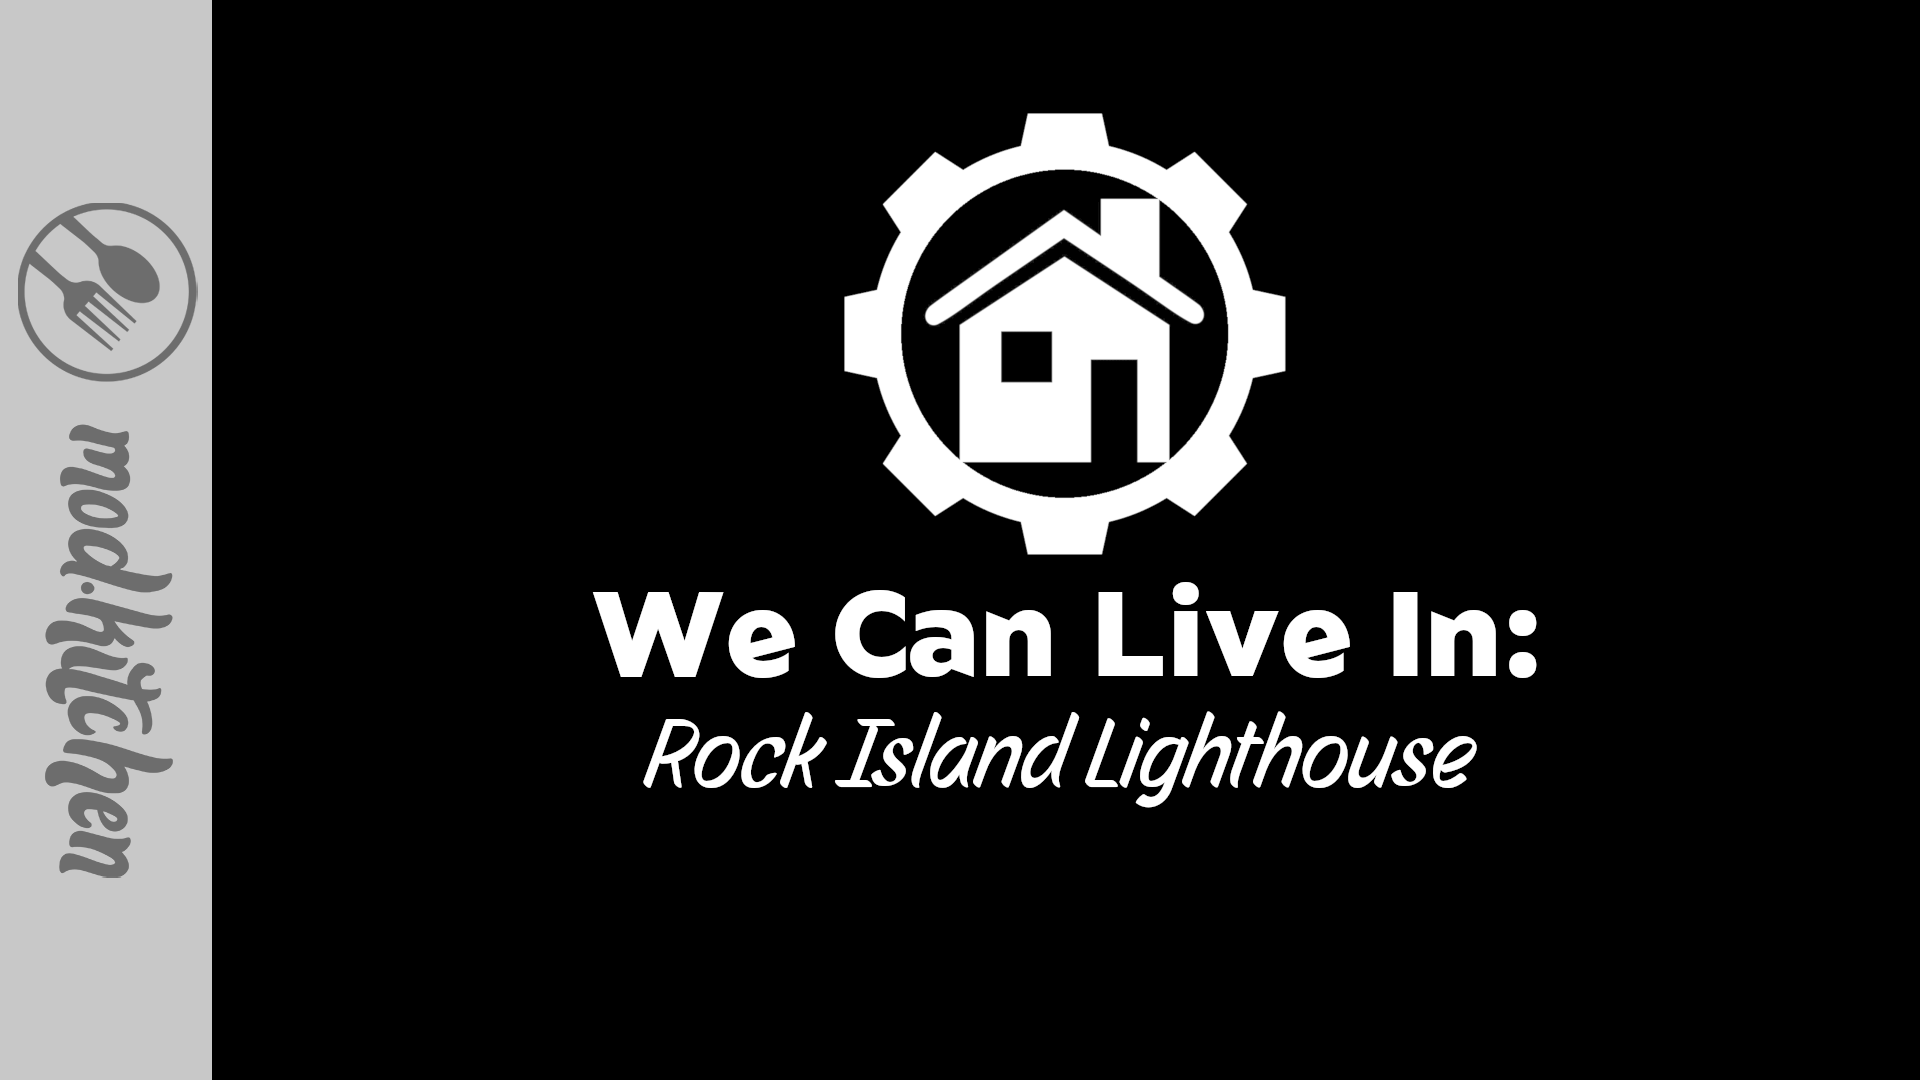 settlement-rockisland-lighthouse-glitchfinder.webp